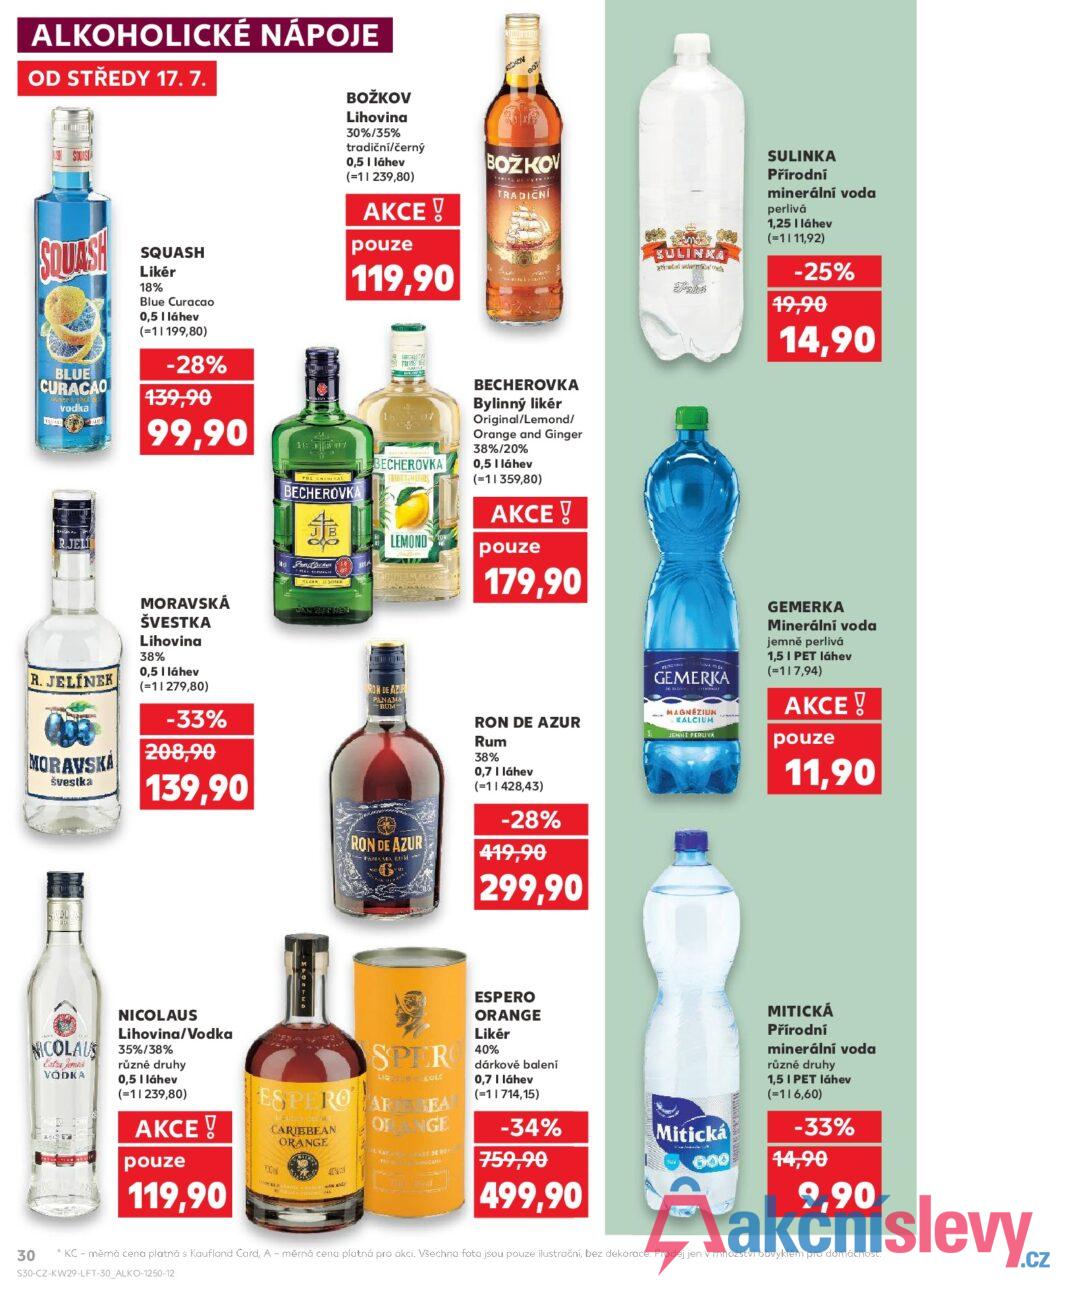 ALKOHOLICKÉ NÁPOJE OD STŘEDY 17. 7. SQUASH BLUE CURACAO vodka SQUASH Likér 18% Blue Curacao 0,5 | láhev (=11199,80) -28% 139,90 99,90 JEL ROCKOV BOŽKOV Lihovina 30%/35% tradiční/černý 0,5 | láhev (=11239,80) AKCE! pouze 119,90 BOŽKOV TRADIČNÍ BRCHEA FRUITS THE CAL BECHEROVKA Fondicher BECHEROVKA FRUITS HERBS LEMOND BECHEROVKA Bylinný likér Original/Lemond/ Orange and Ginger 38%/20% 0,5 | láhev (=11359,80) AKCE! pouze 179,90 SULINKA traded by SULINKA Přírodní minerální voda perlivá 1,25 | láhev (=1111,92) -25% 19,90 14,90 R. JELÍNEK MORAVSKA švestka MORAVSKÁ ŠVESTKA Lihovina 38% 0,5 I láhev (=11279,80) -33% 208,90 139,90 JAN BETHER RON DE AZUE PANAMA -RUM- RON DE AZUR -PANAMA RUM -- RON DE AZUR Rum 38% 0,7 I láhev (=11428,43) -28% 419,90 299,90 GEMERKA MAGNÉZIUM KALCIUM JEMNÉ PERLIVA GEMERKA Minerální voda jemně perlivá 1,5 I PET láhev (=117,94) AKCE! pouze 11,90 NICOLAUS Lihovina/Vodka NICOLAUS 35%/38% Extra Jemná VODKA různé druhy 0,5 I láhev (=11239,80) AKCE! pouze SPER LIQREOLE ESPERO AR SEA ESPERO ORANGE Likér 40% dárkové balení 0,7 | láhev (=1|714,15) ORANGE CARIBBEAN ORANGE NASE DE RO -34% 759,90 Mitická 600 FCM 119,90 NA 499,90 MITICKÁ Přírodní minerální voda různé druhy 1,5 I PET láhev (=116,60) -33% 14,90 9,90 30 KC - měrná cena platná s Kaufland Card, A - měrná cena platná pro akci. Všechna fota jsou pouze ilustrační, bez dekorace. Prodej jen v množství obvyklém pro domácnost. S30-CZ-KW29-LFT-30_ALKO-1250-12